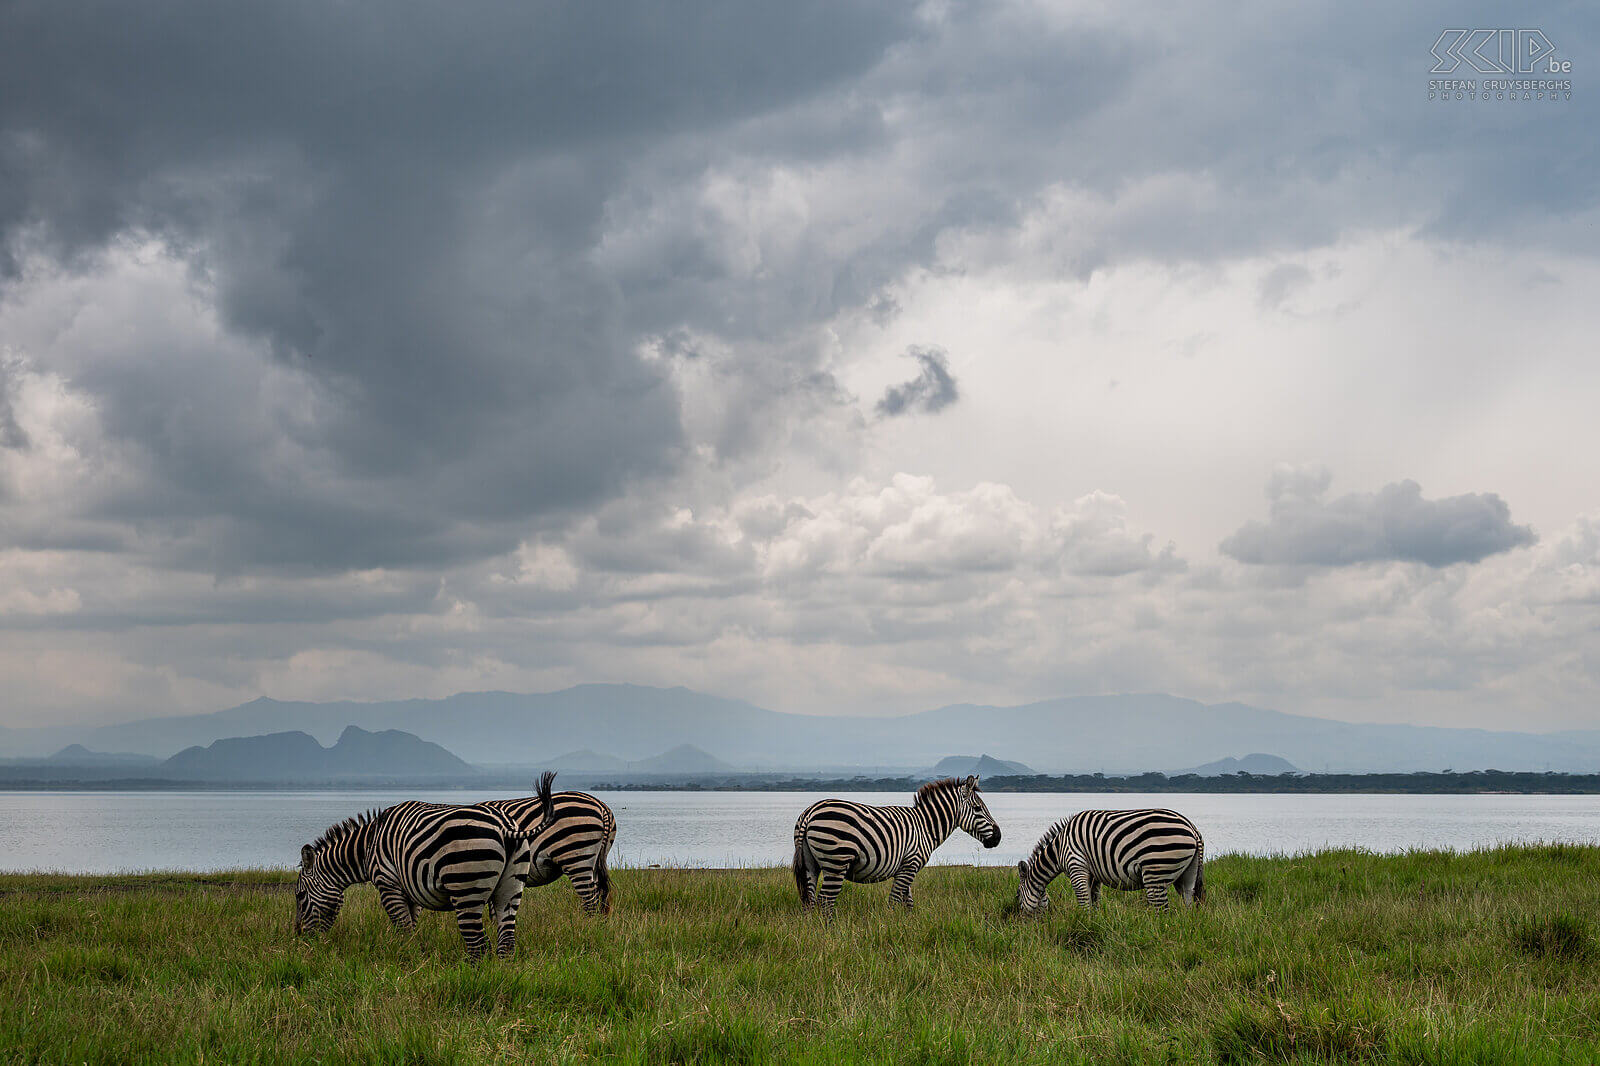 Soysambu - Plains zebra A small group of plains zebras at beautiful Lake Elementaita Stefan Cruysberghs